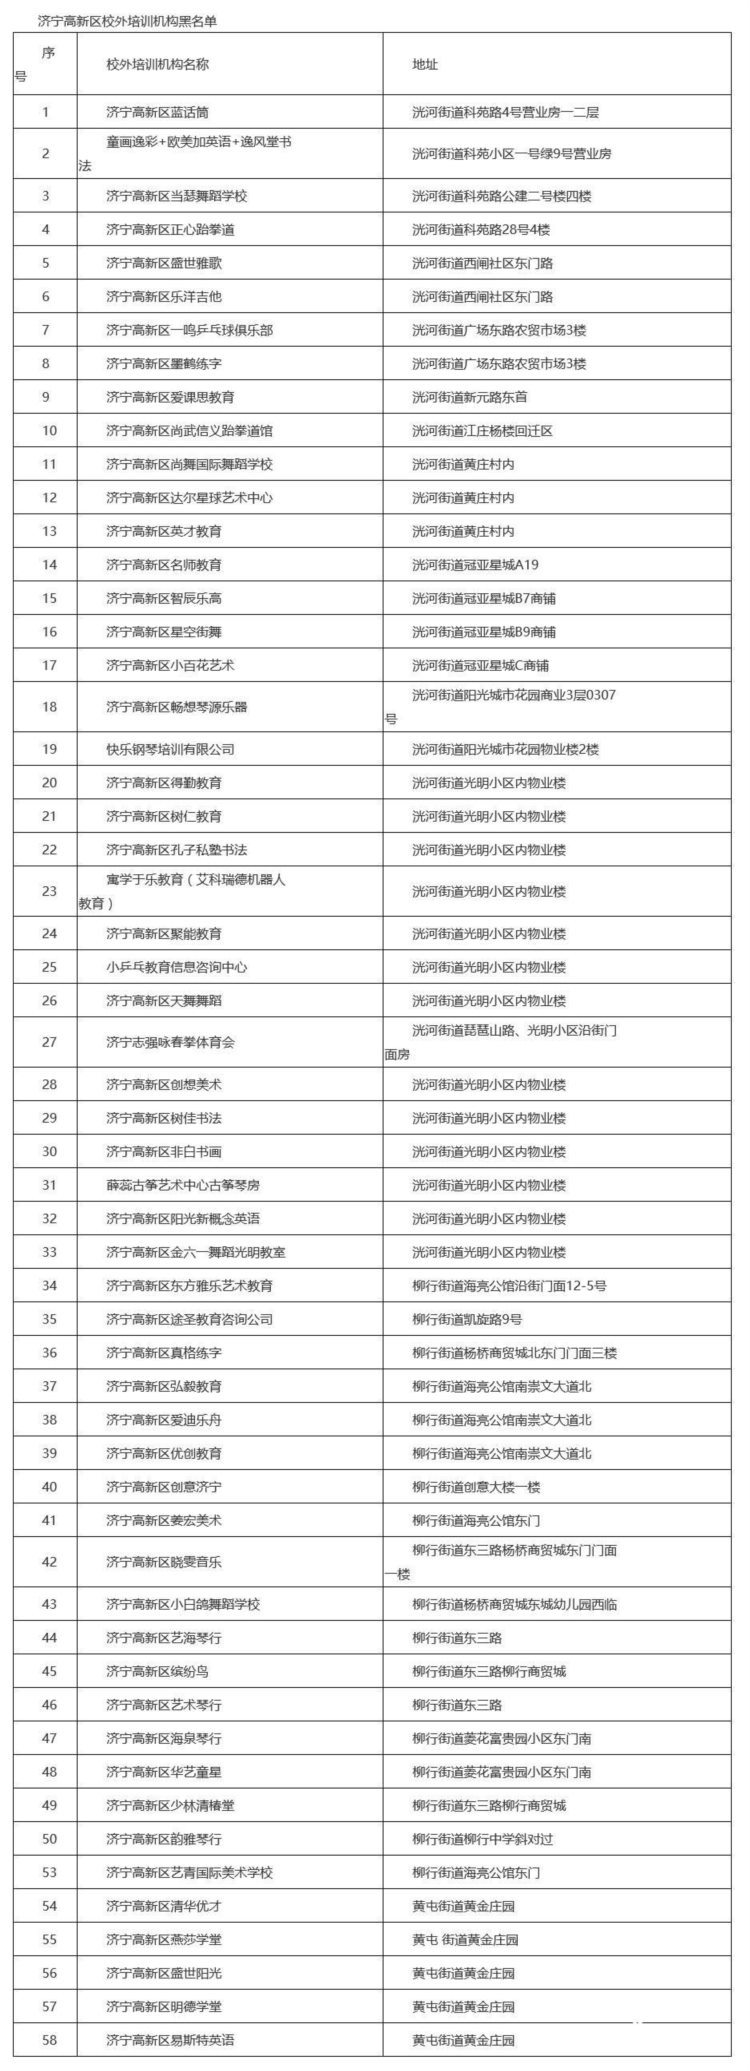 济宁高新区公布校外培训机构黑名单 多家知名机构上榜